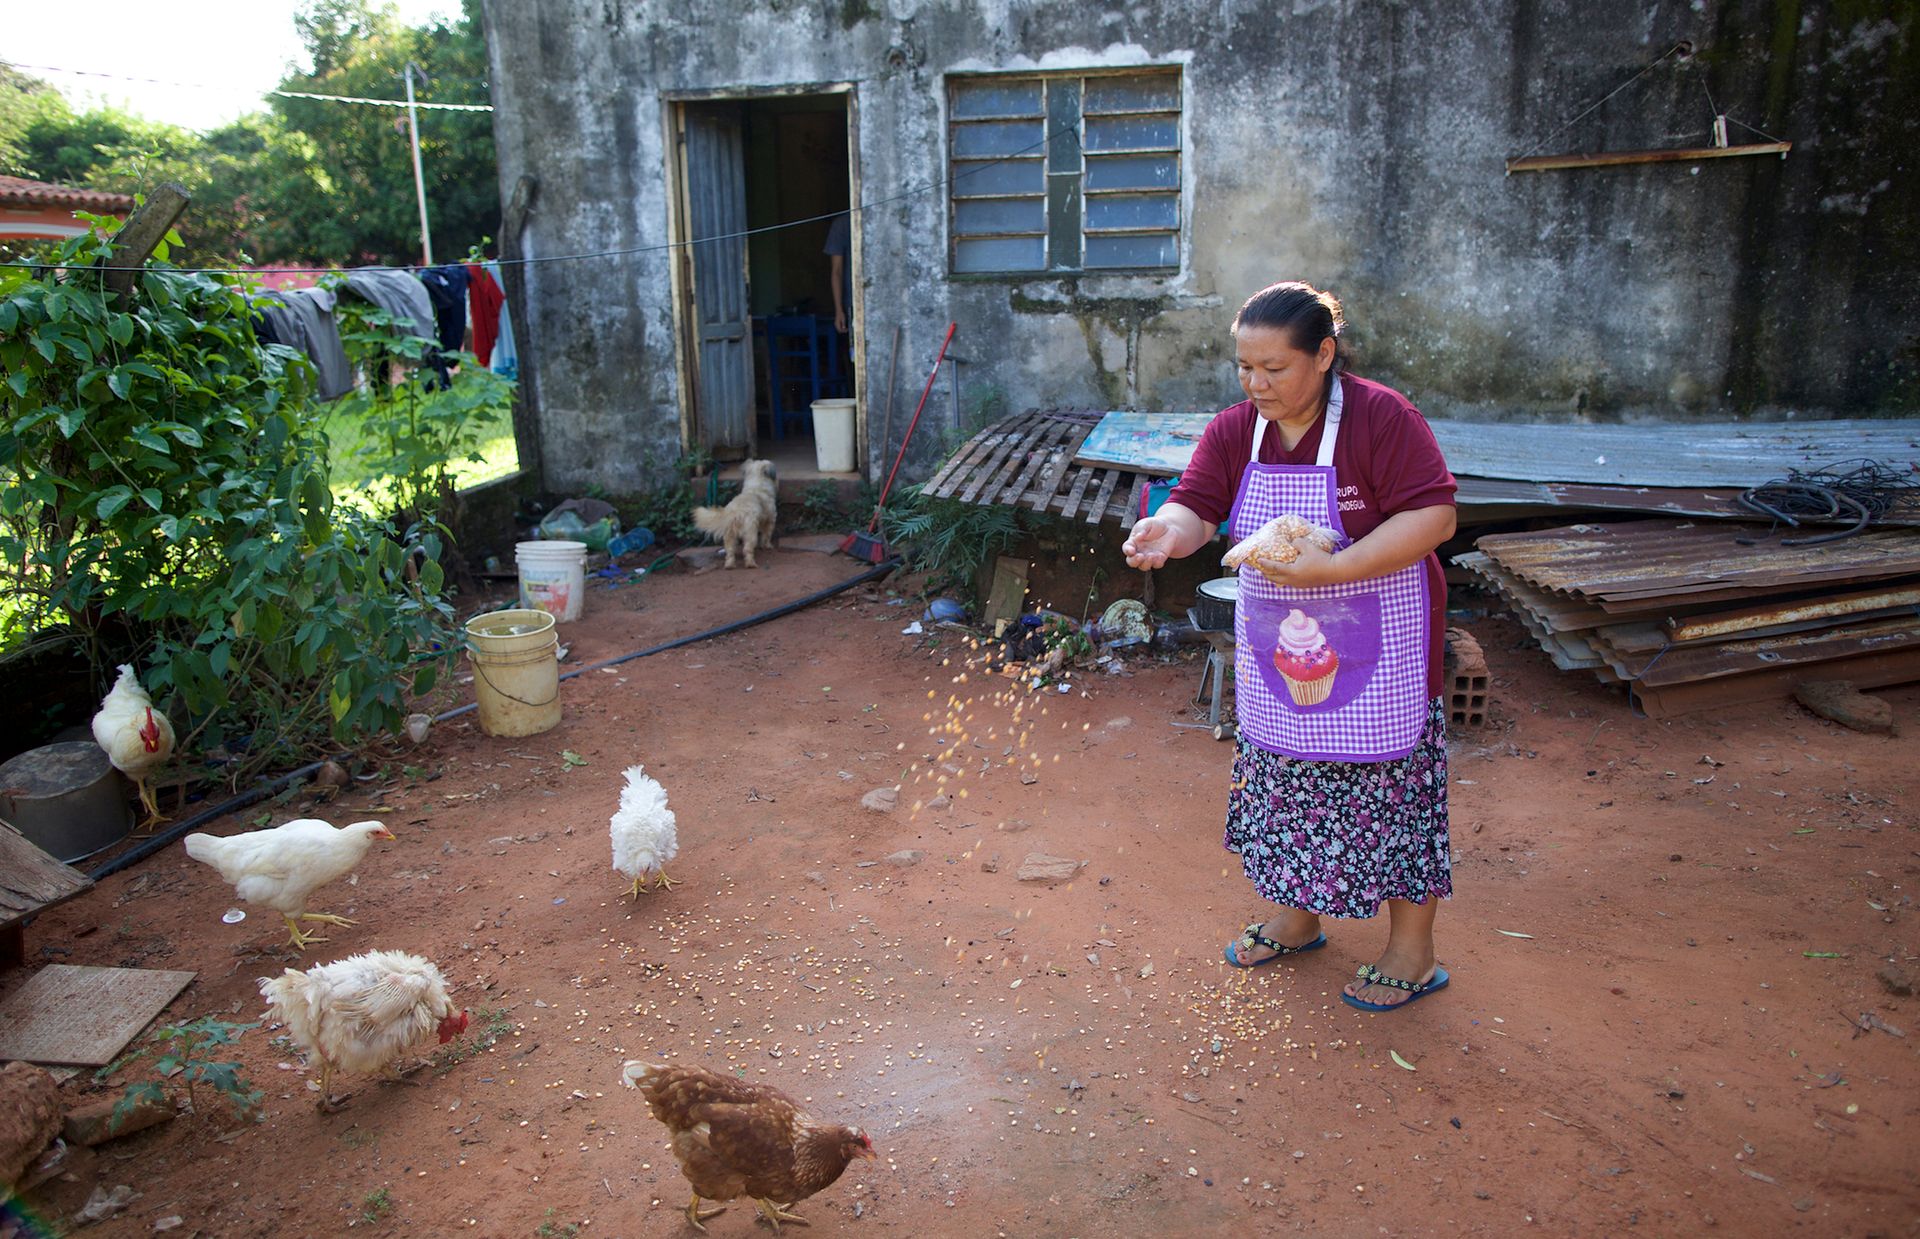 닭에게 모이를 주는 것은 아드리아나의 조그마한 사업에서 중요한 부분이다. 빵을 만드는 데는 달걀이 꼭 필요한데, 그 달걀을 닭이 낳아 주기 때문이다.